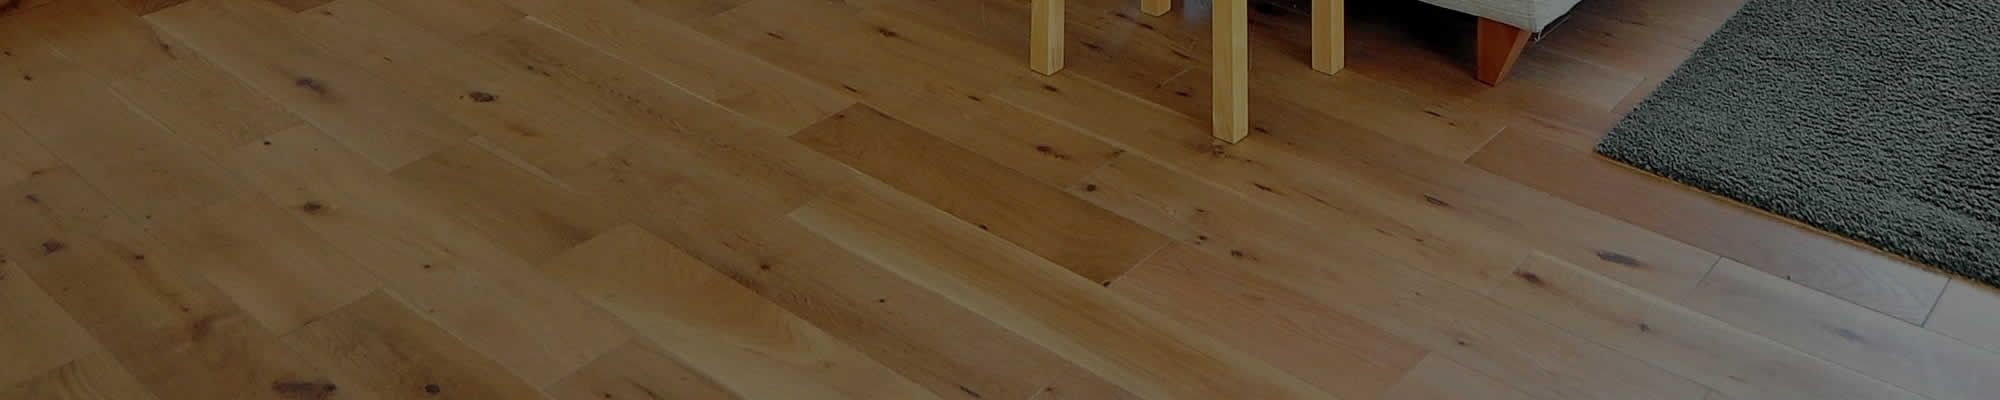 Hardwood Floor Resurfacing Greendale WI